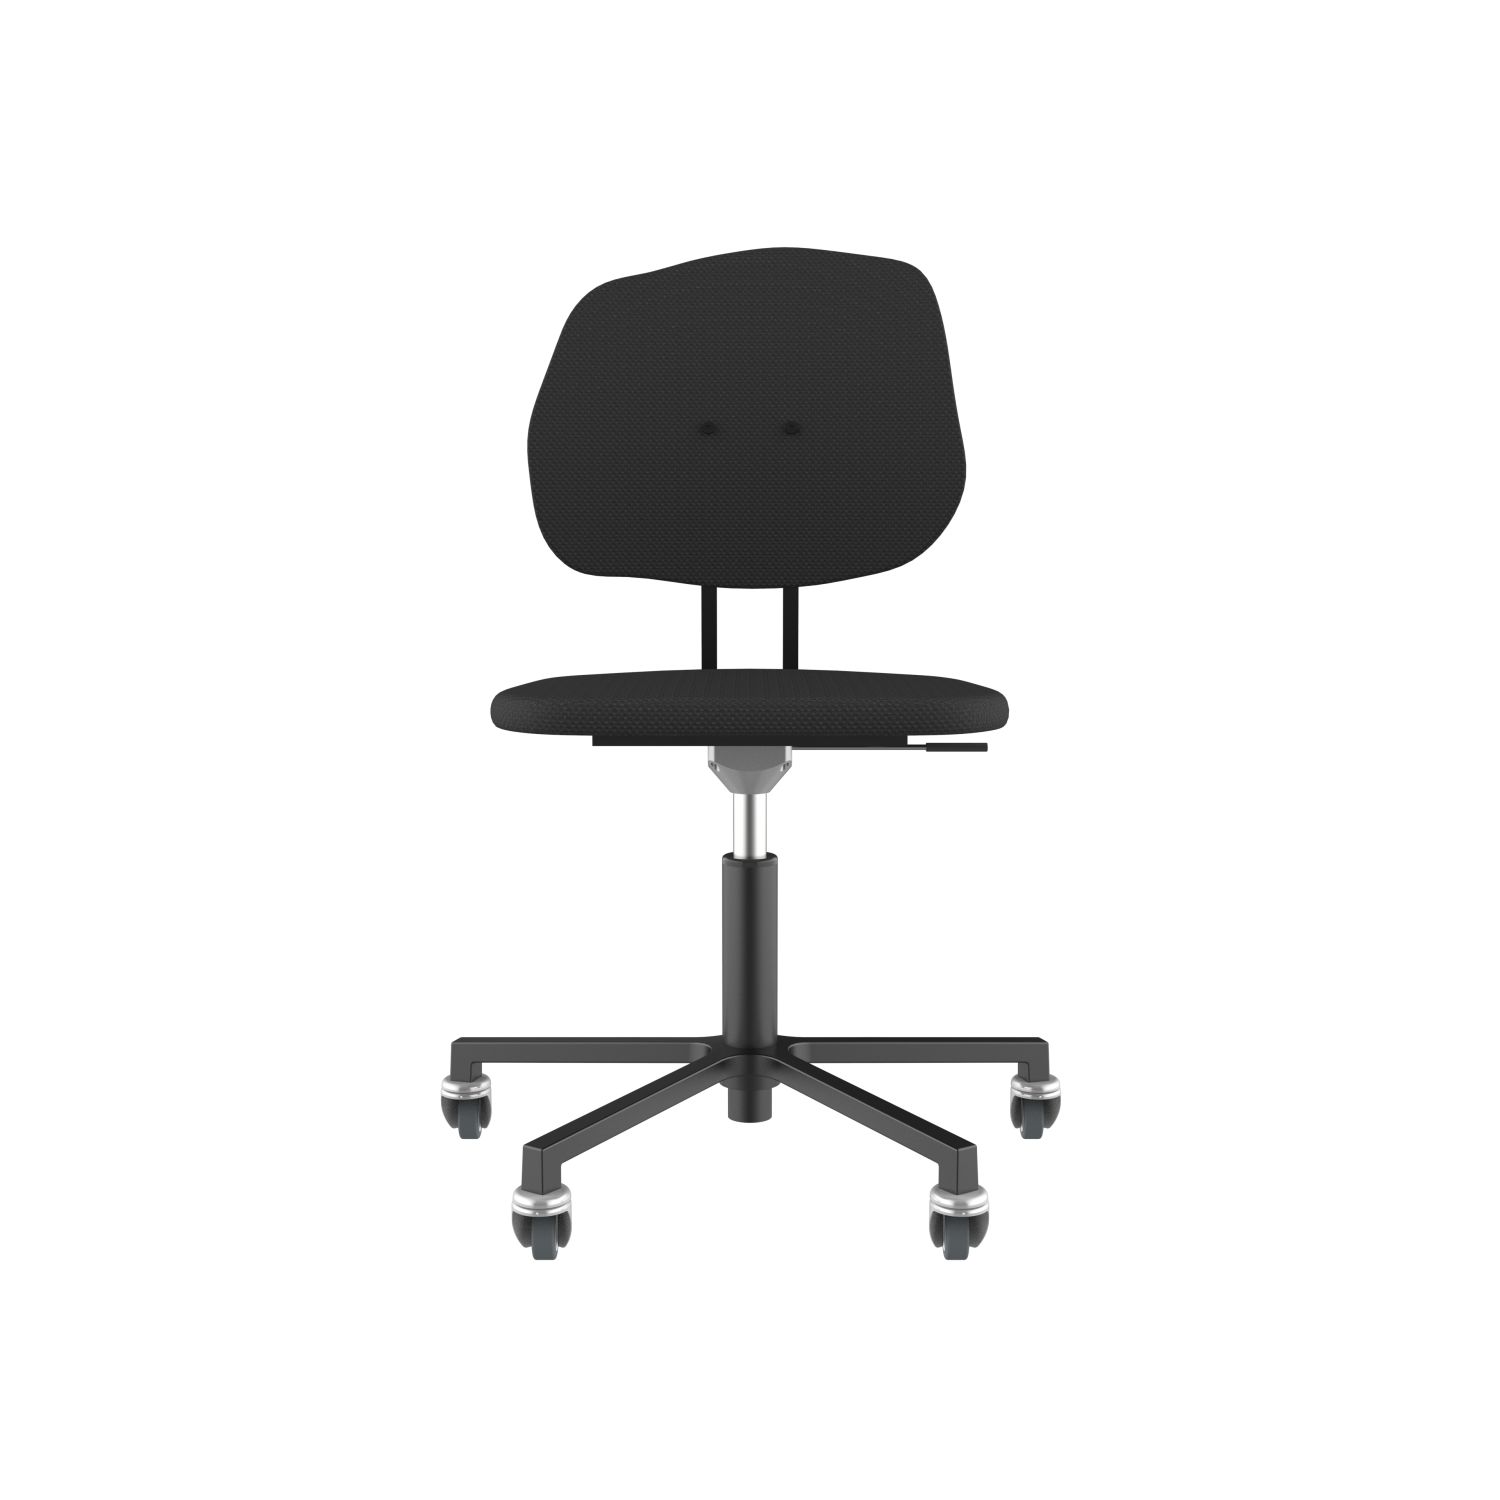 lensvelt maarten baas office chair without armrests backrest g havana black 090 black ral9005 soft wheels